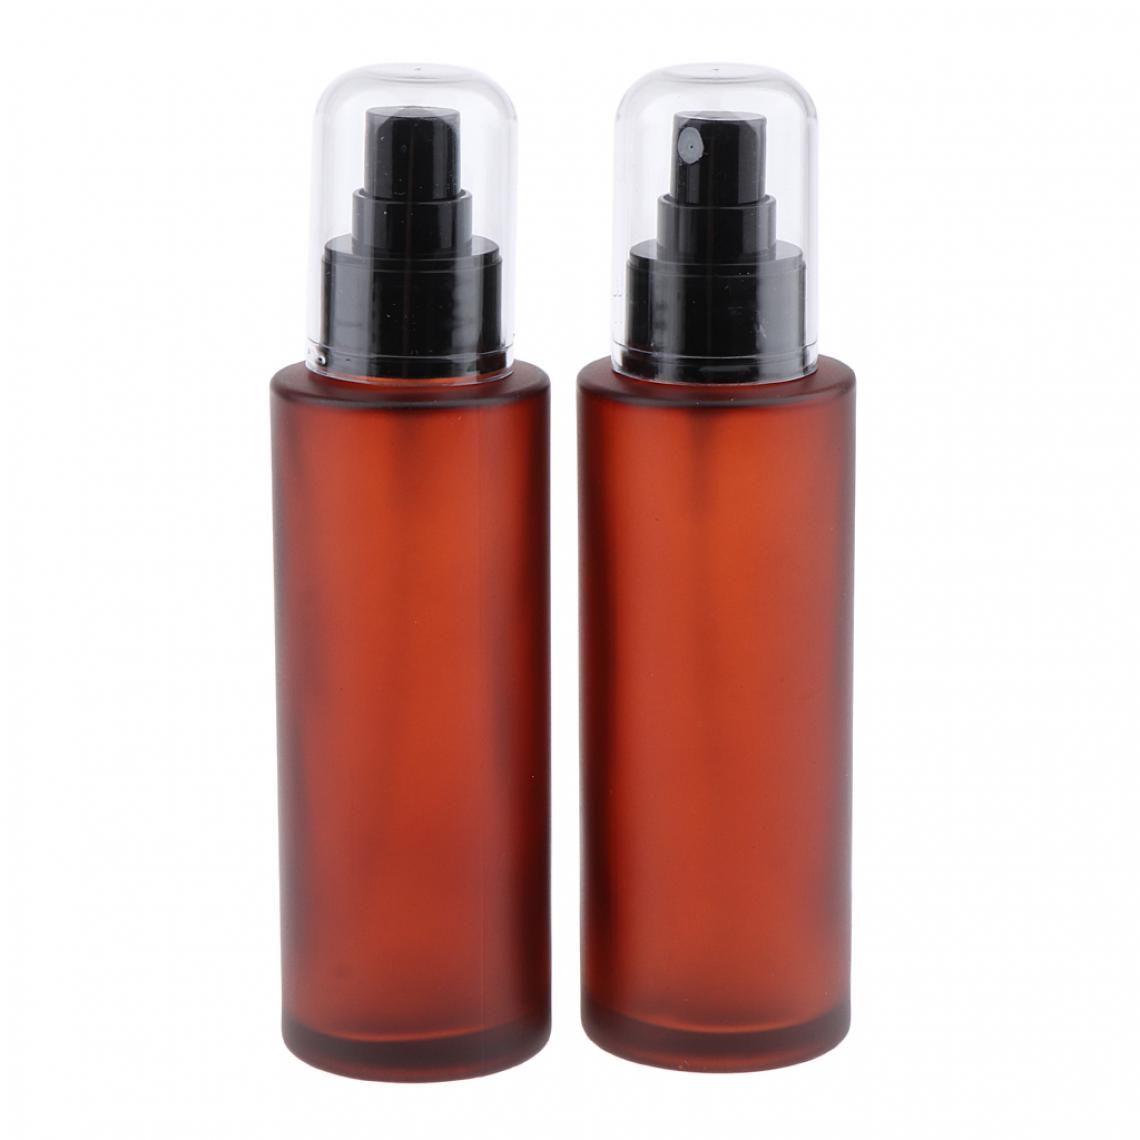 marque generique - 2x voyage rechargeable verre vide vaporisateur parfum bouteille atomiseur pompe 100 ml - Maquillage et coiffure